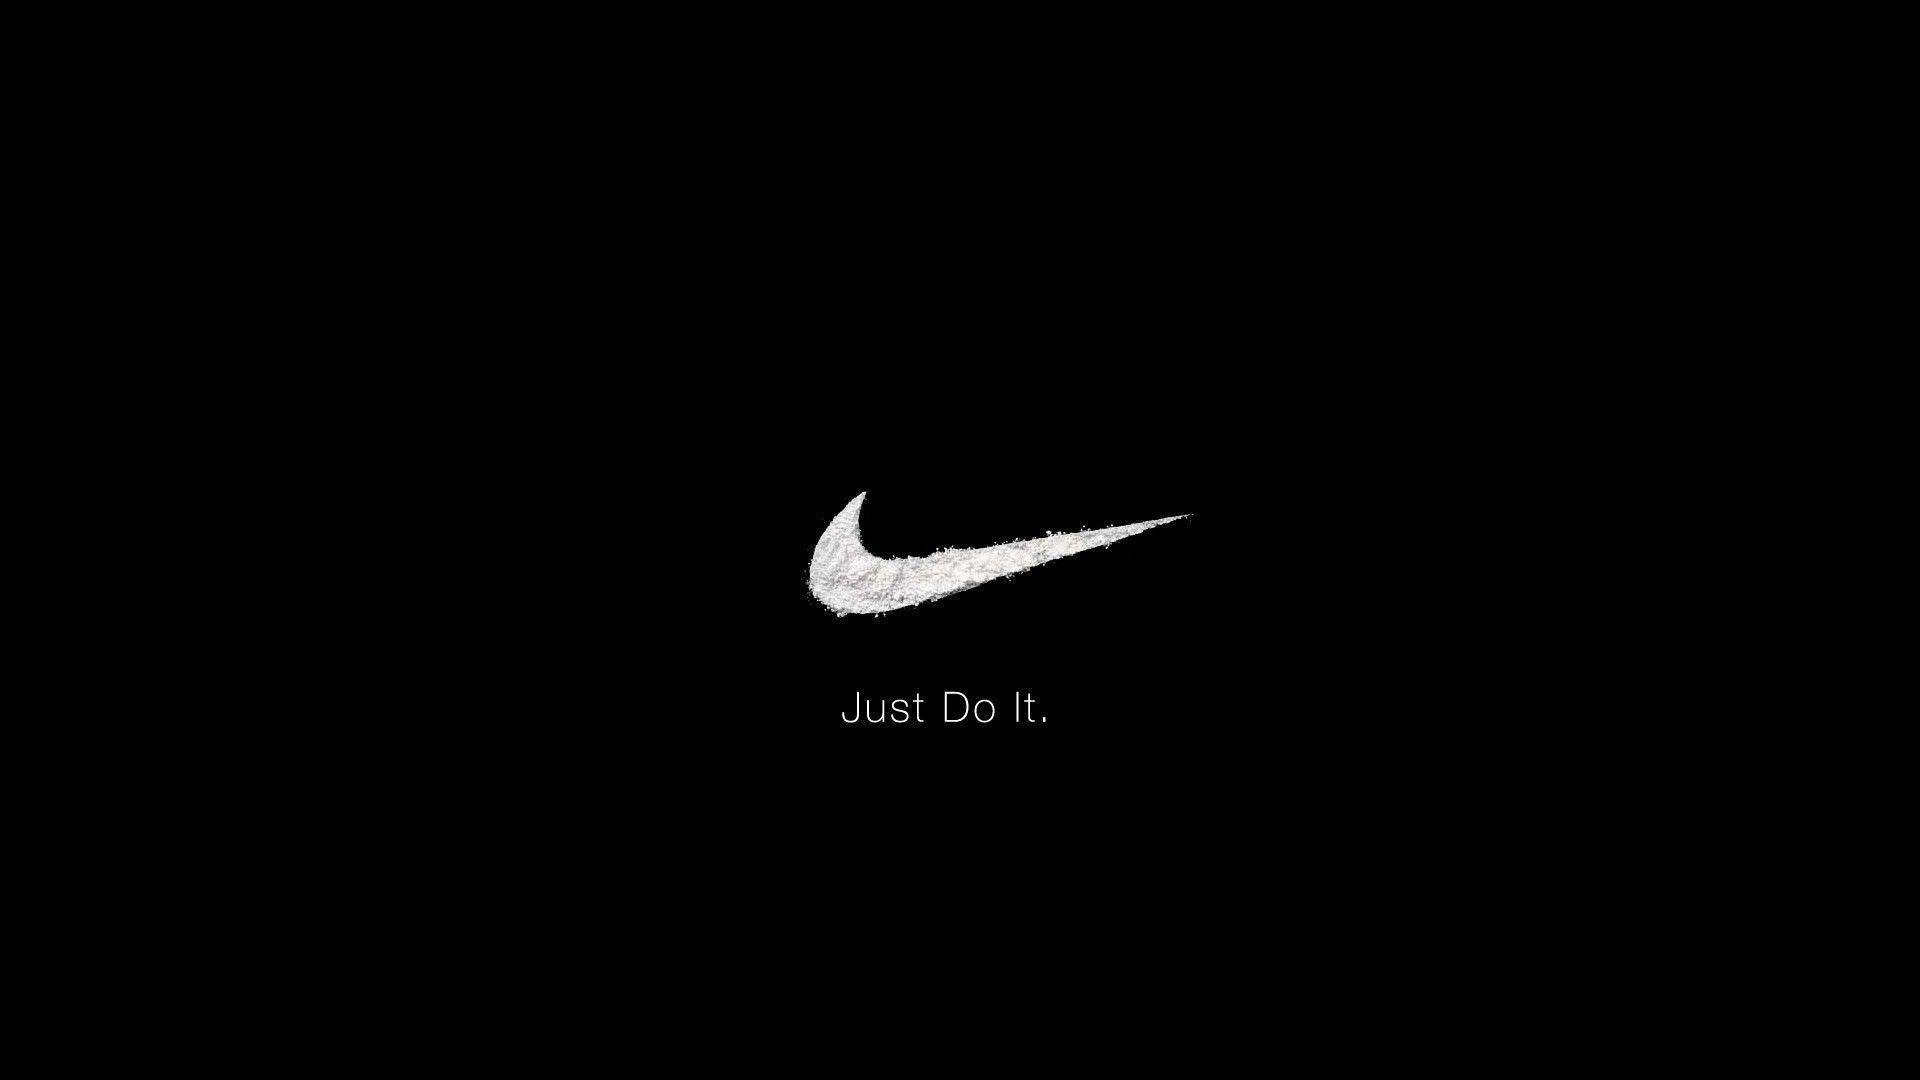 Cool Nike Logos Image Is 4K Wallpaper. Nike logo wallpaper, Nike wallpaper, Just do it wallpaper